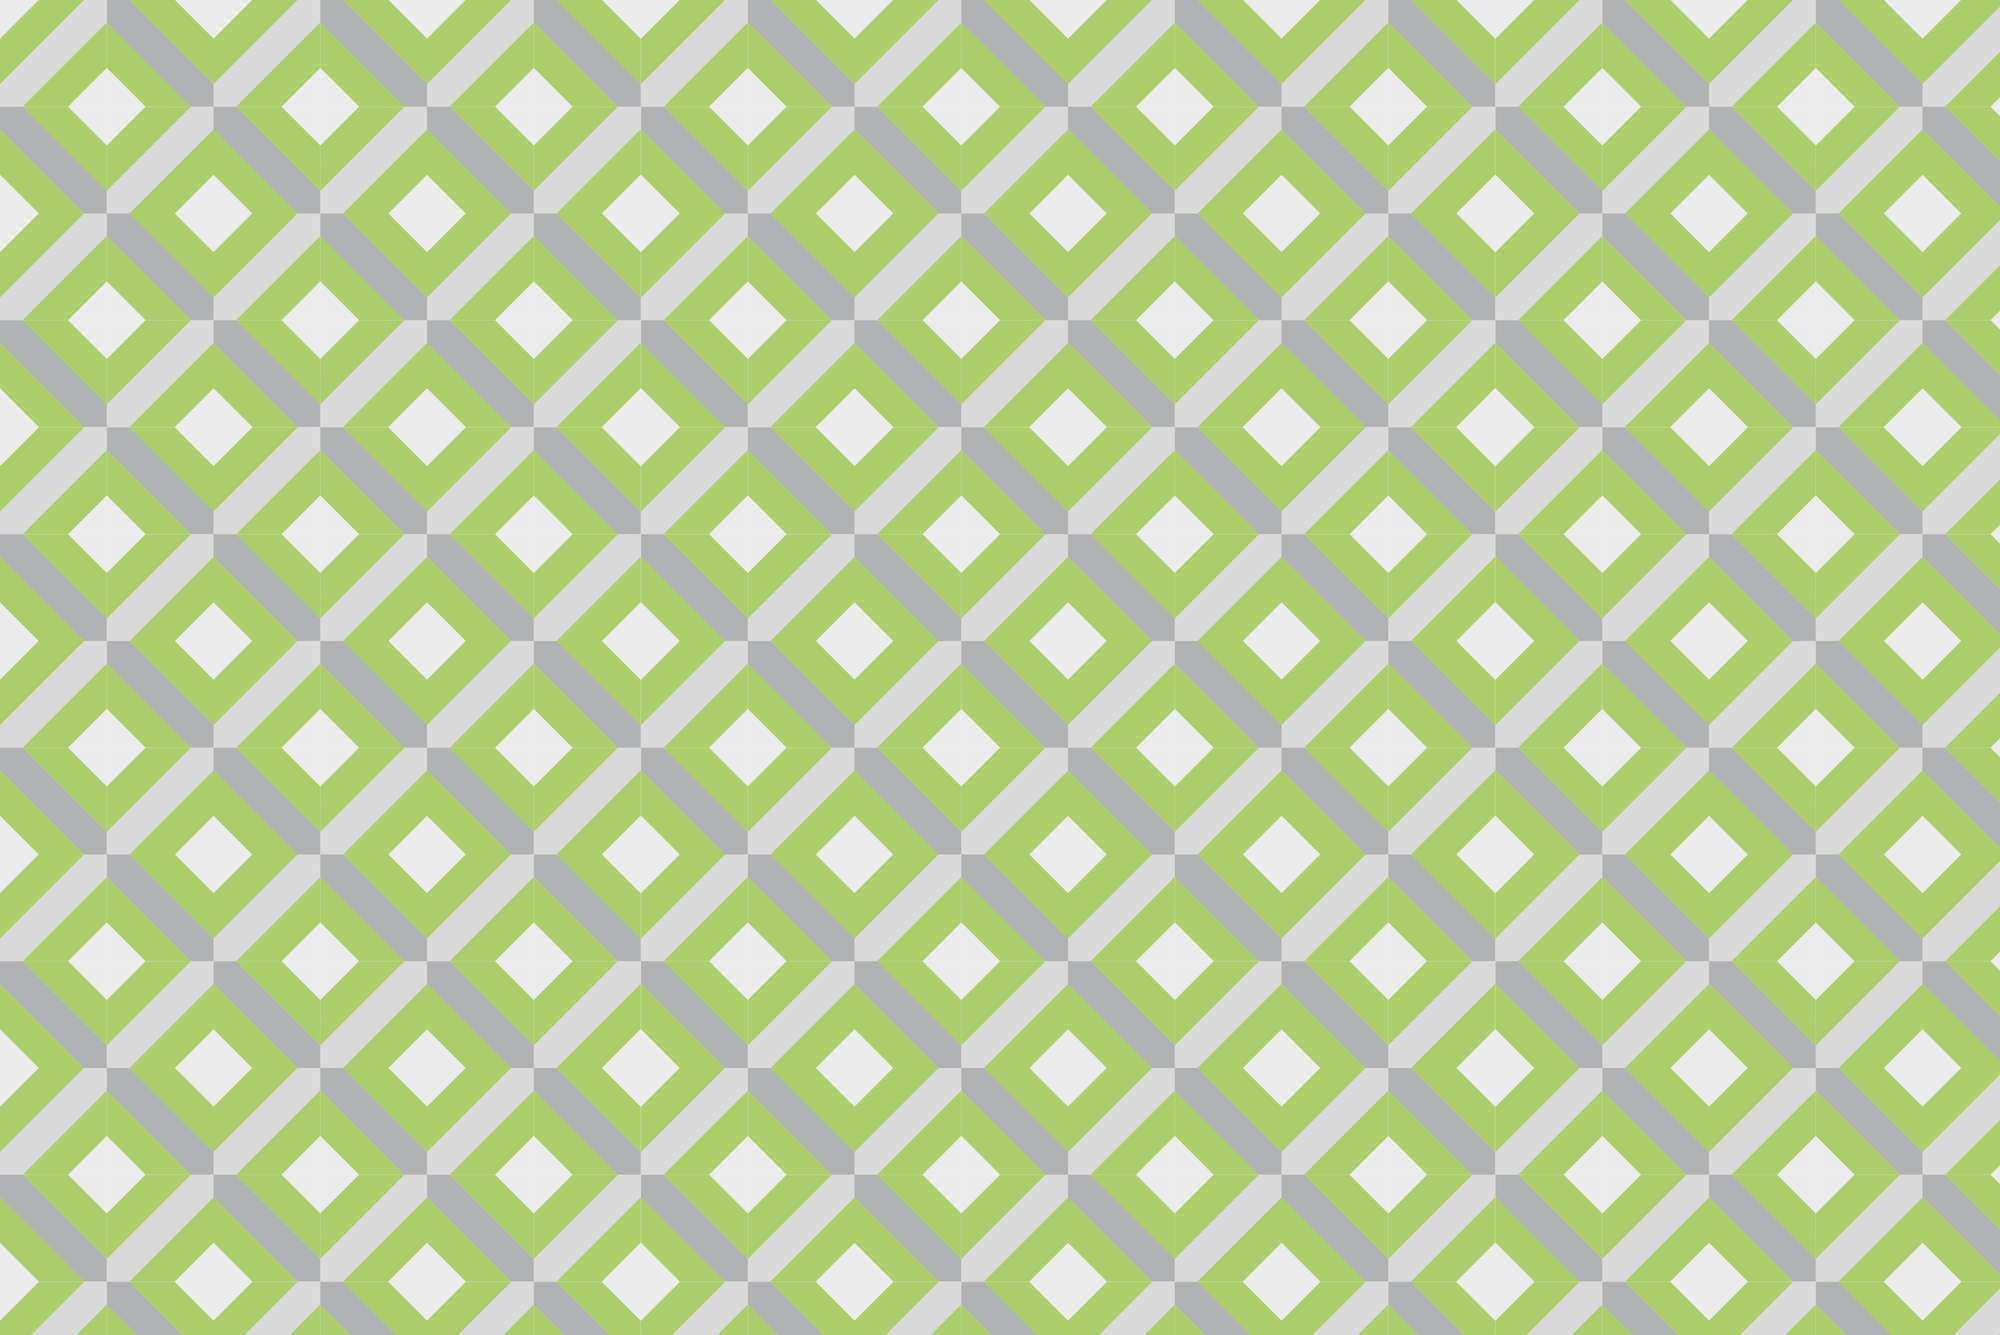             Designbehang doosmotief met kleine vierkantjes groen op mat glad vlies
        